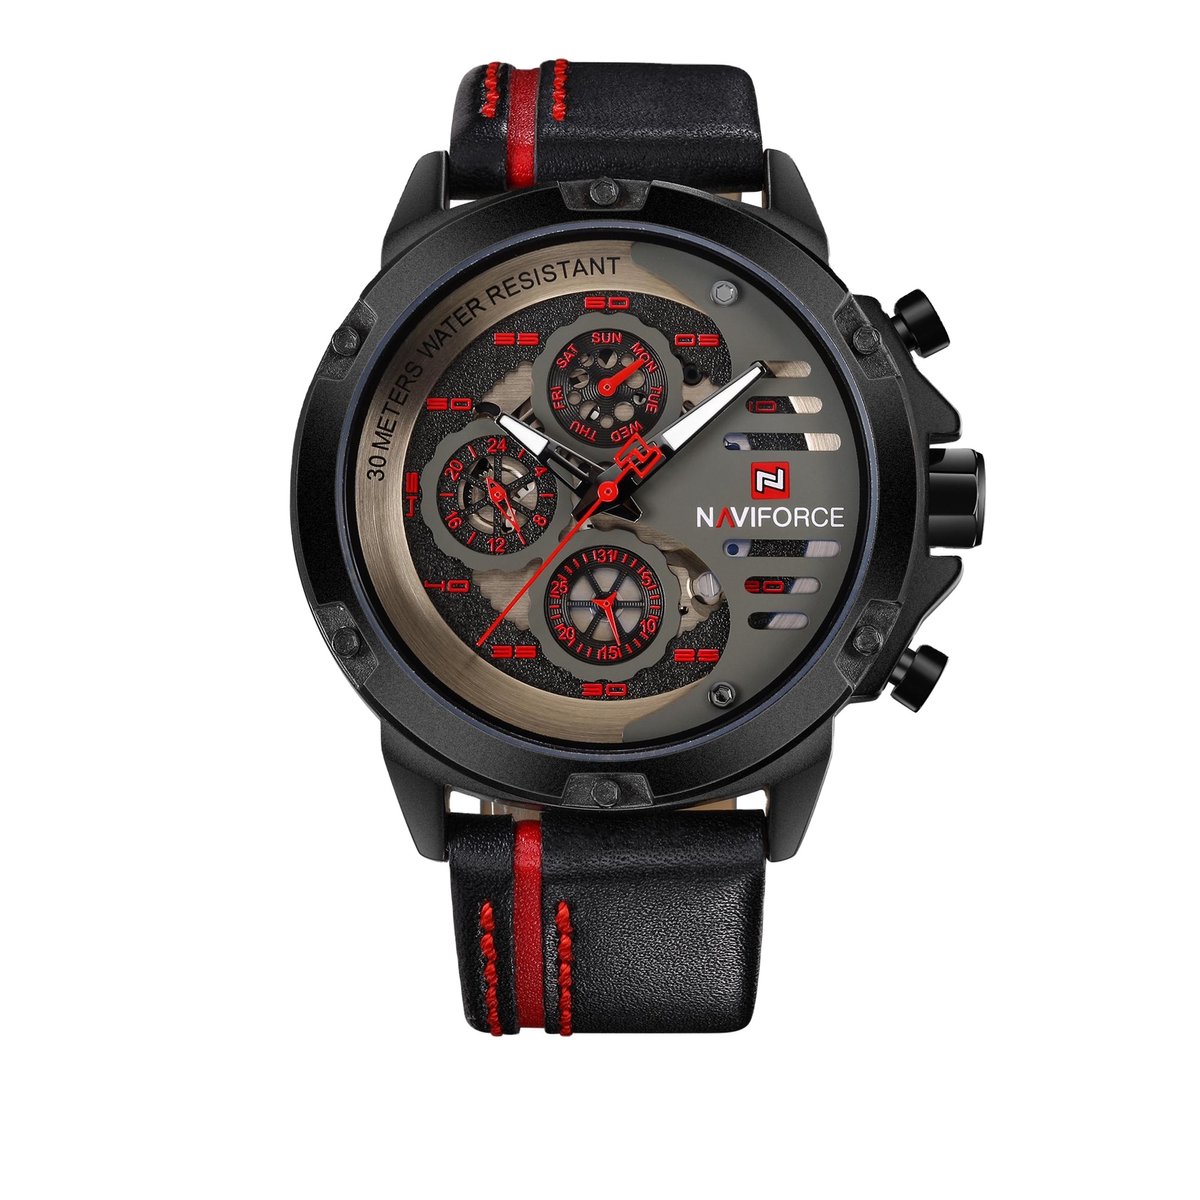 NAVIFORCE horloge voor mannen, met zwarte lederen polsband, zwarte horlogekast en grijze + rode wijzerplaat met in het donker oplichtende wijzers ( model 9110 BRB ), verpakt in een mooie geschenkdoos